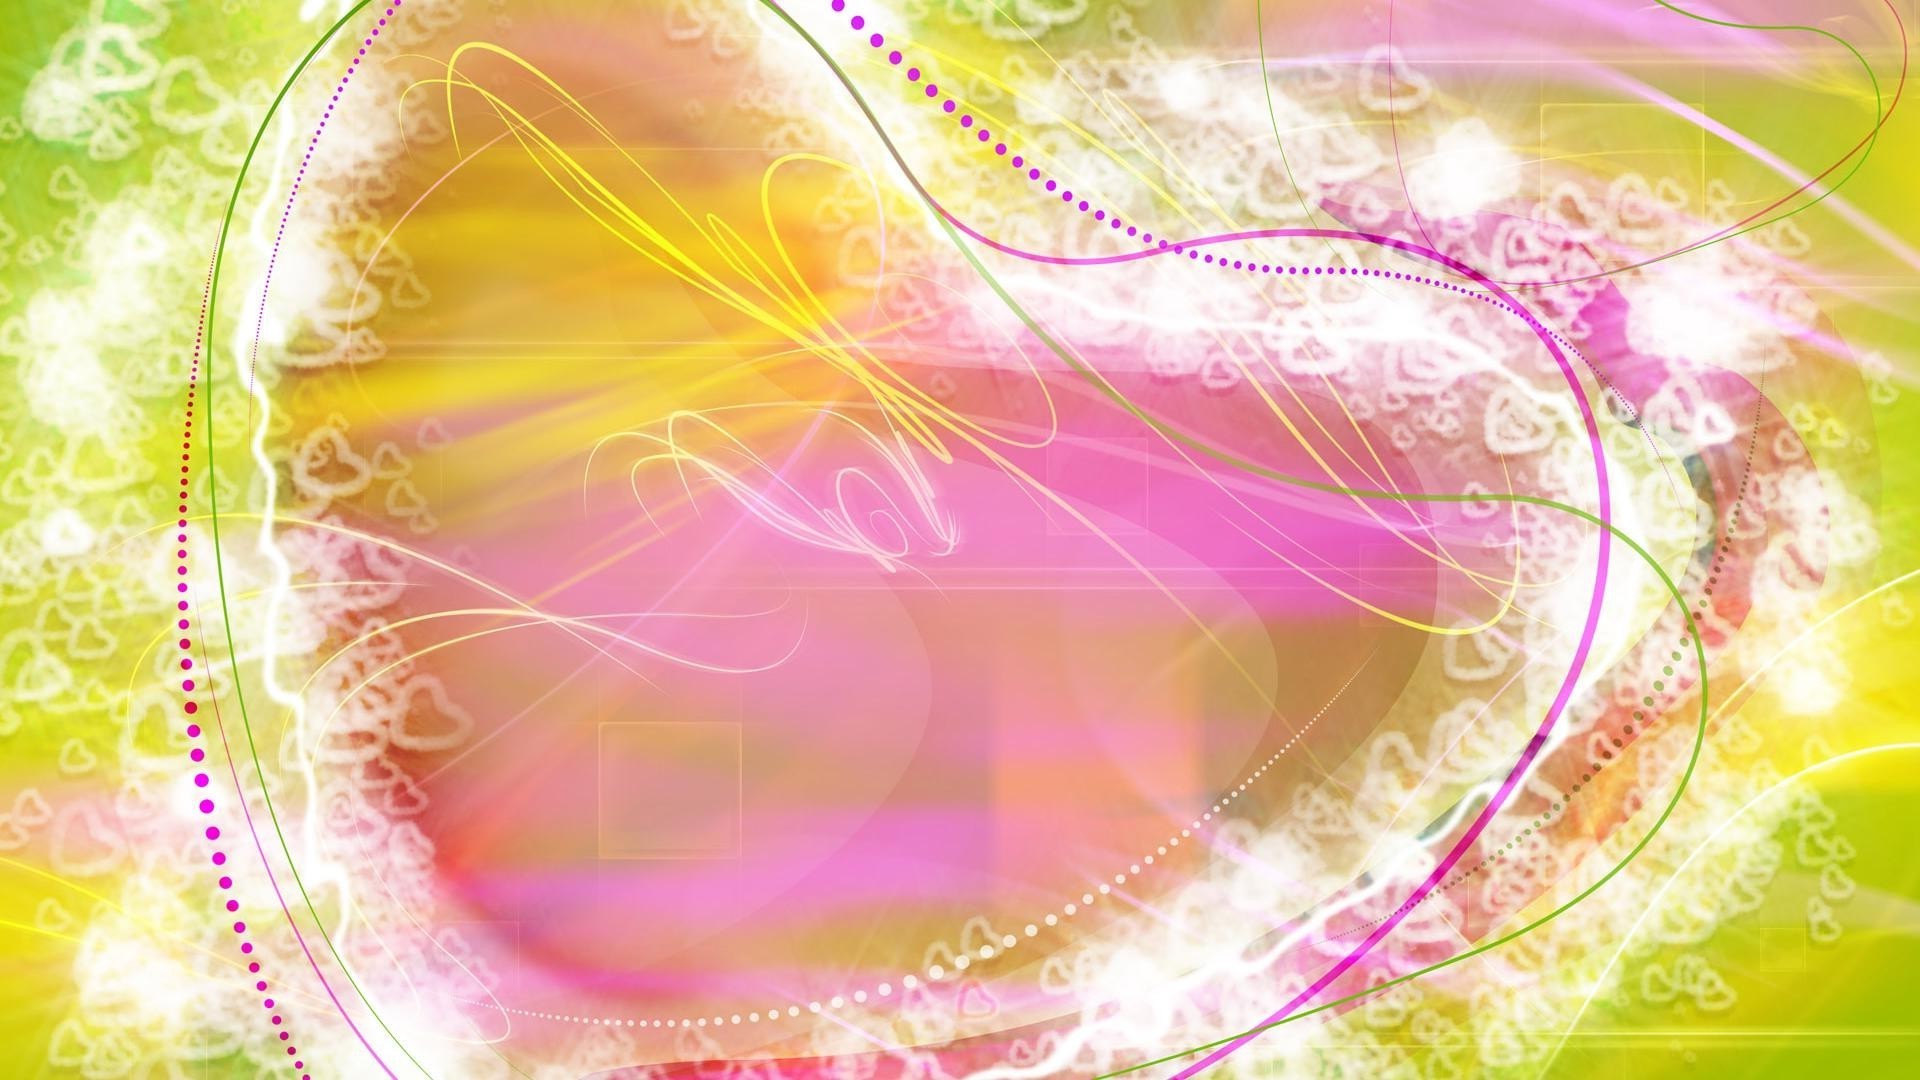 сердечки аннотация иллюстрация дизайн график шаблон искусство обои рабочего стола цвет формы футуристический украшения кривая движения яркий фон